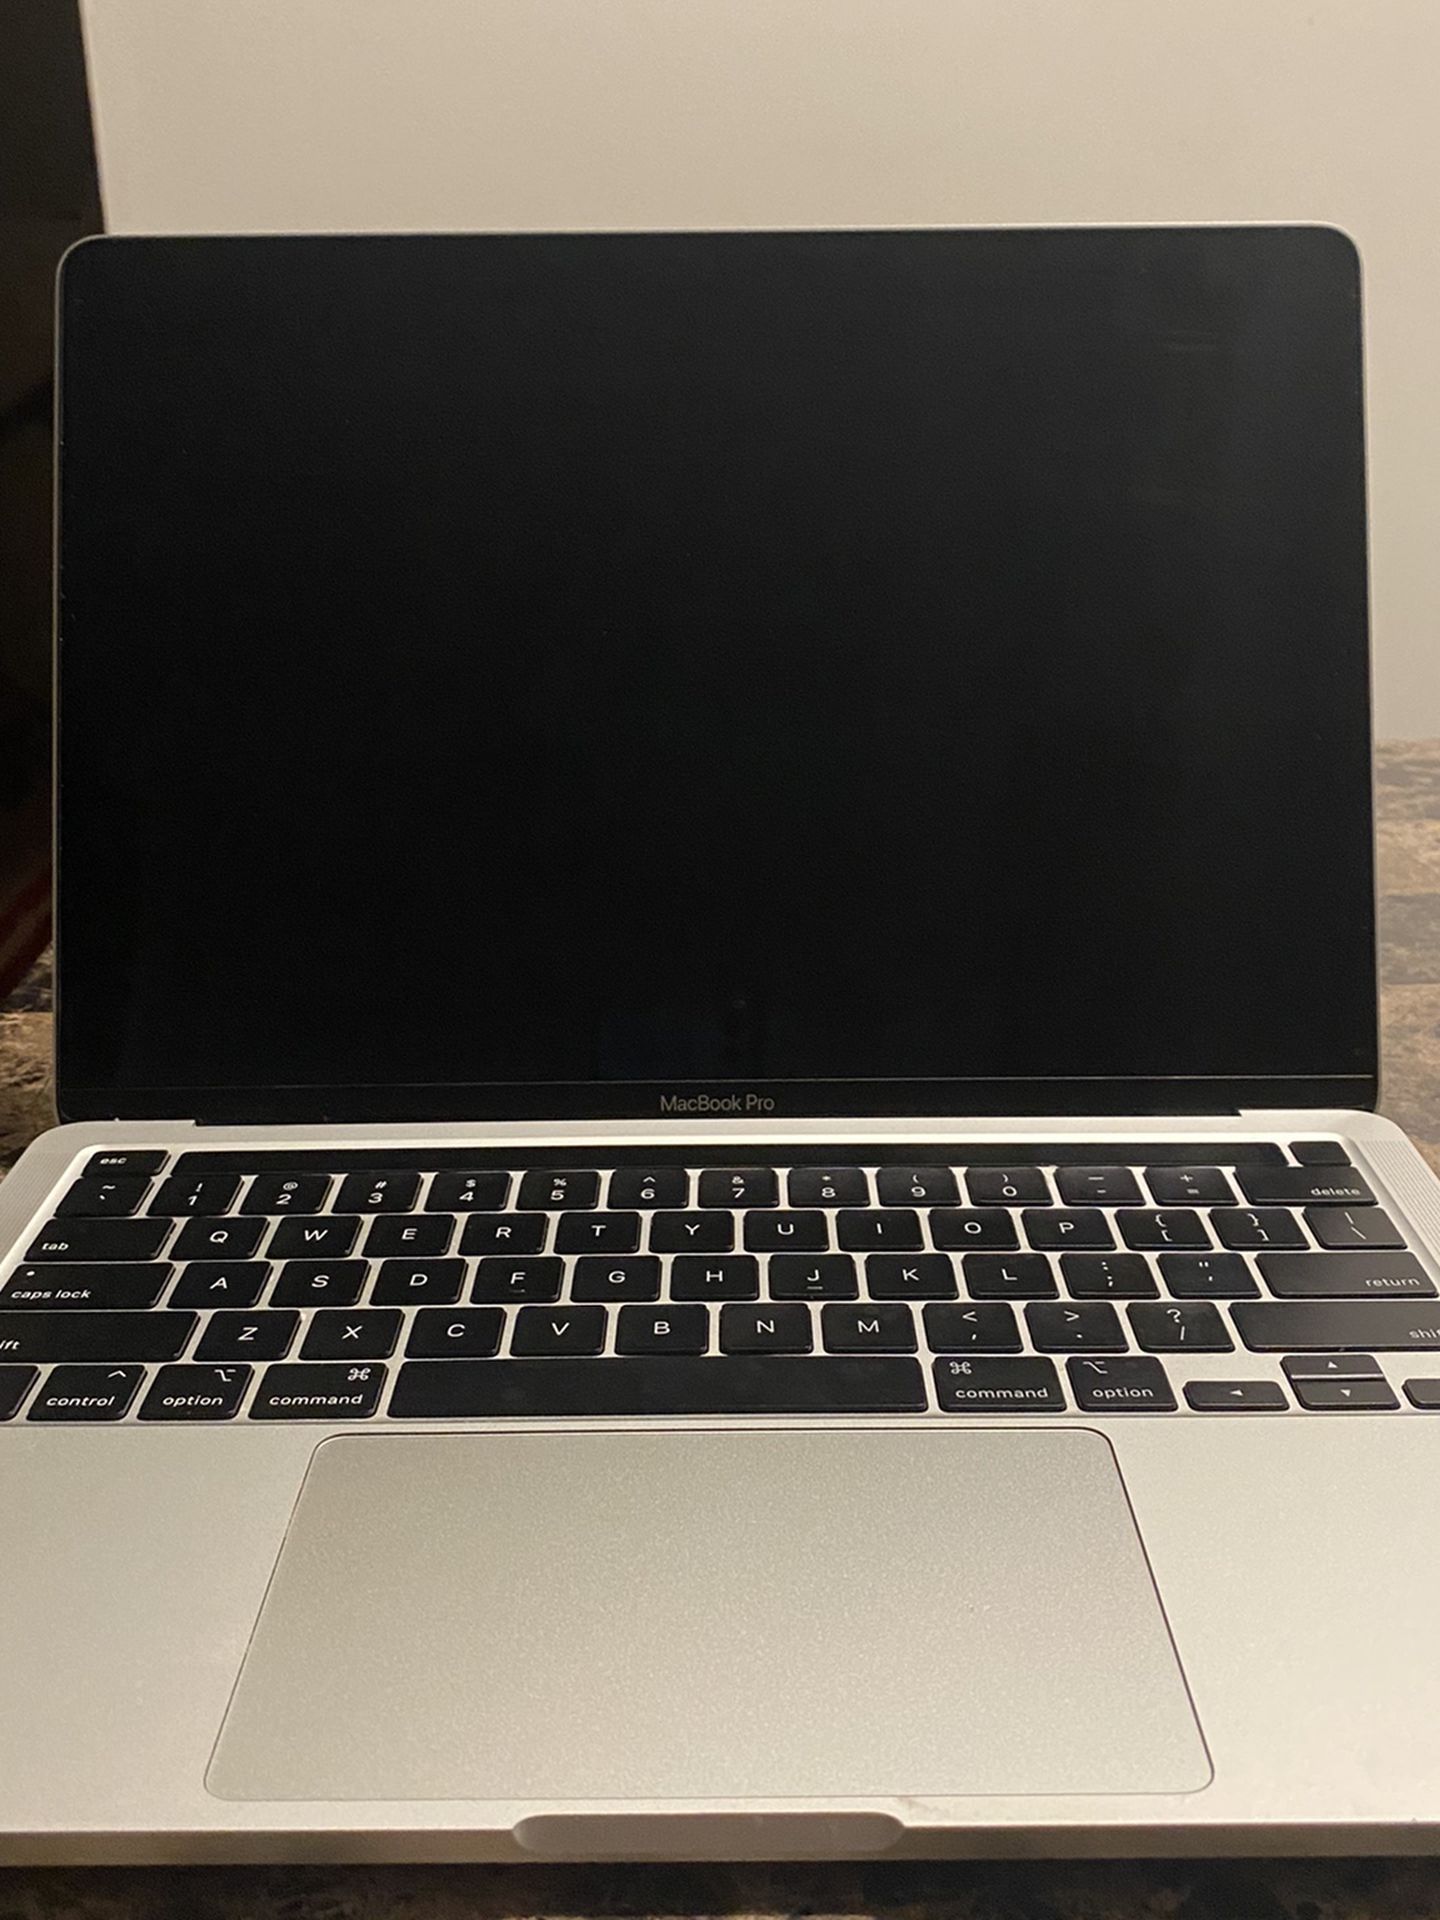 MacBook pro 13’ with touchbar.